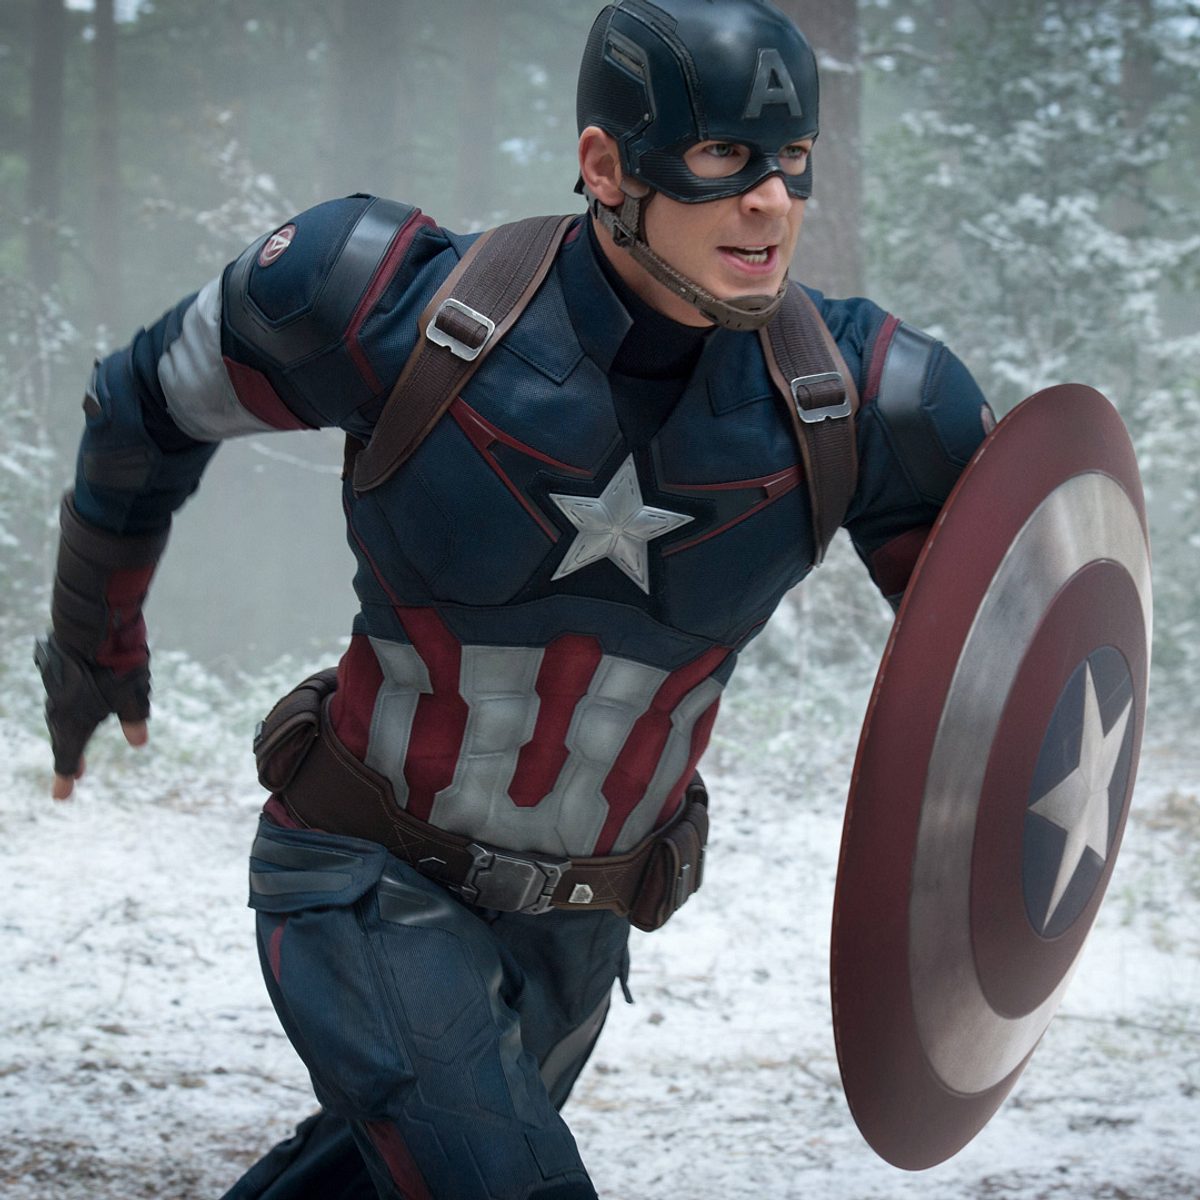 Beliebtesten Marvel-Charaktere: Captain America / Steve Rogers – Chris Evans